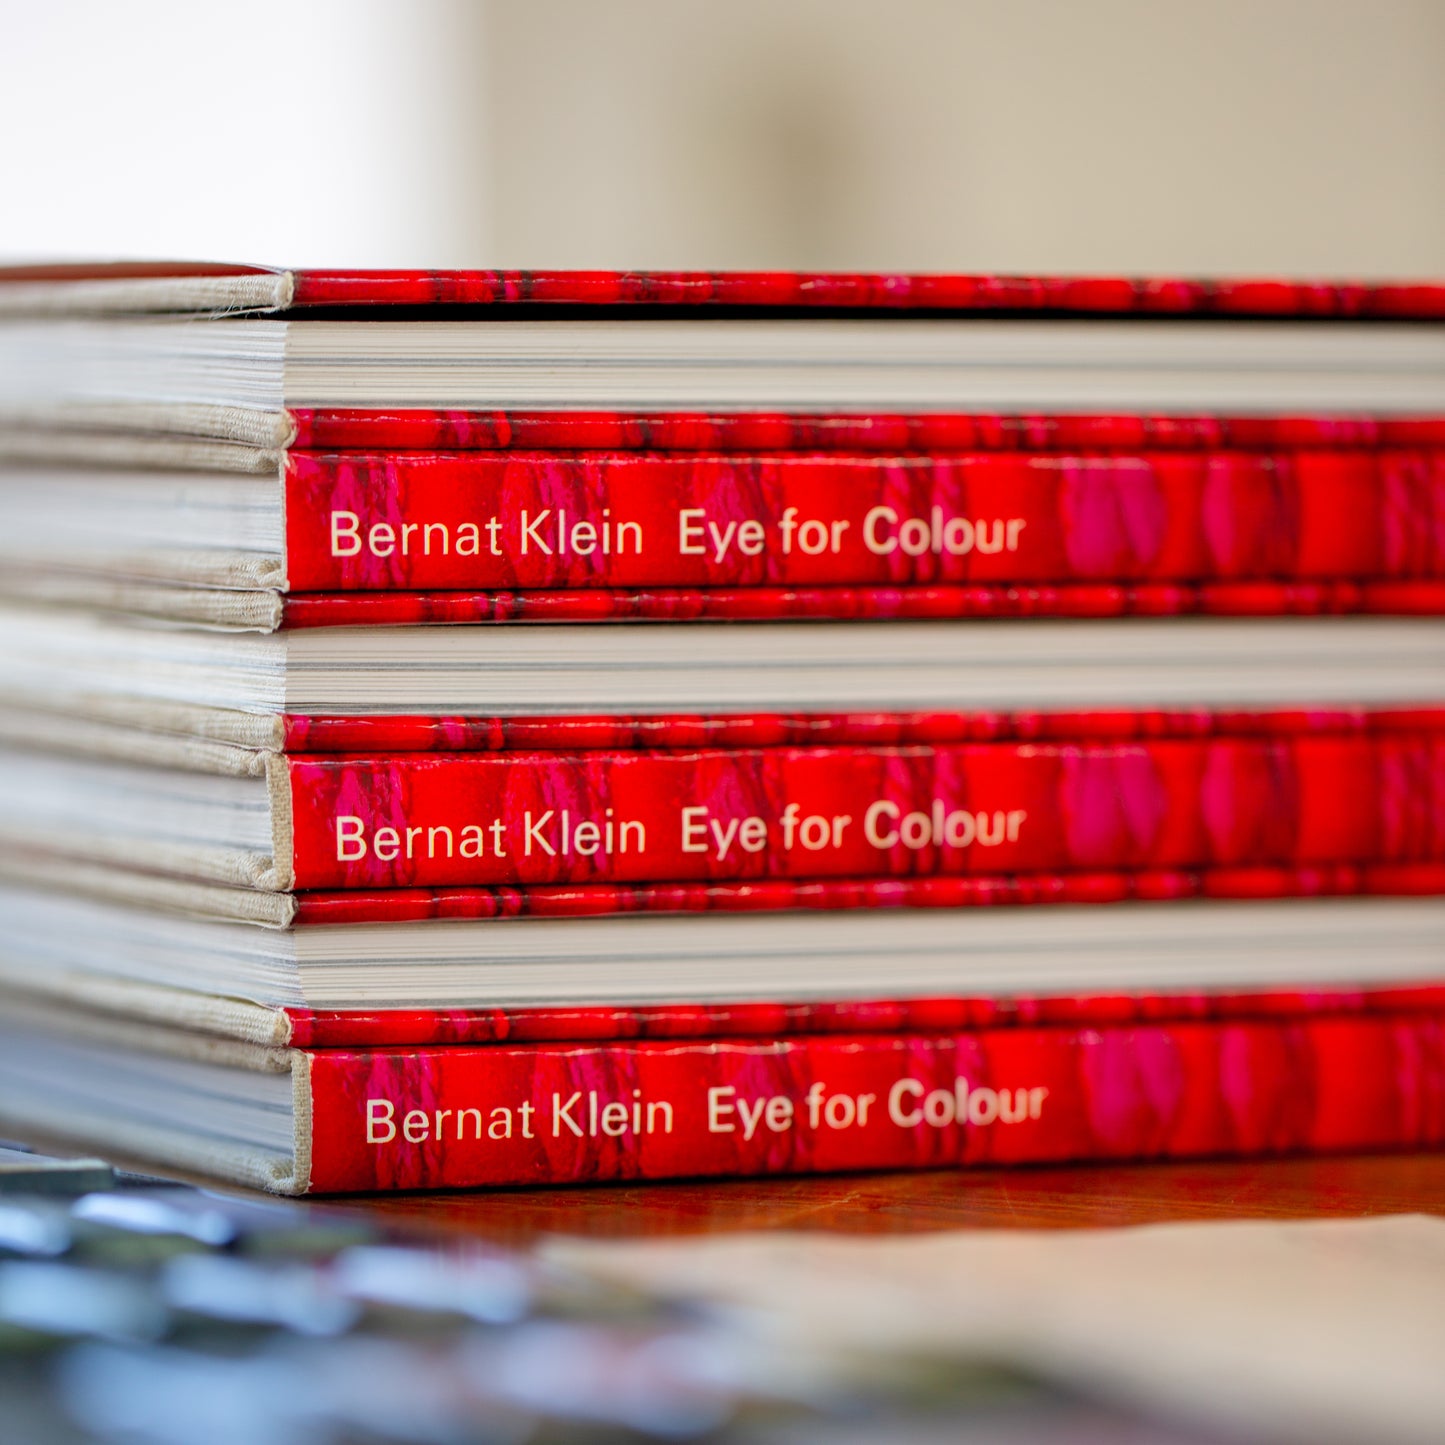 Eye for Colour - Bernat Klein